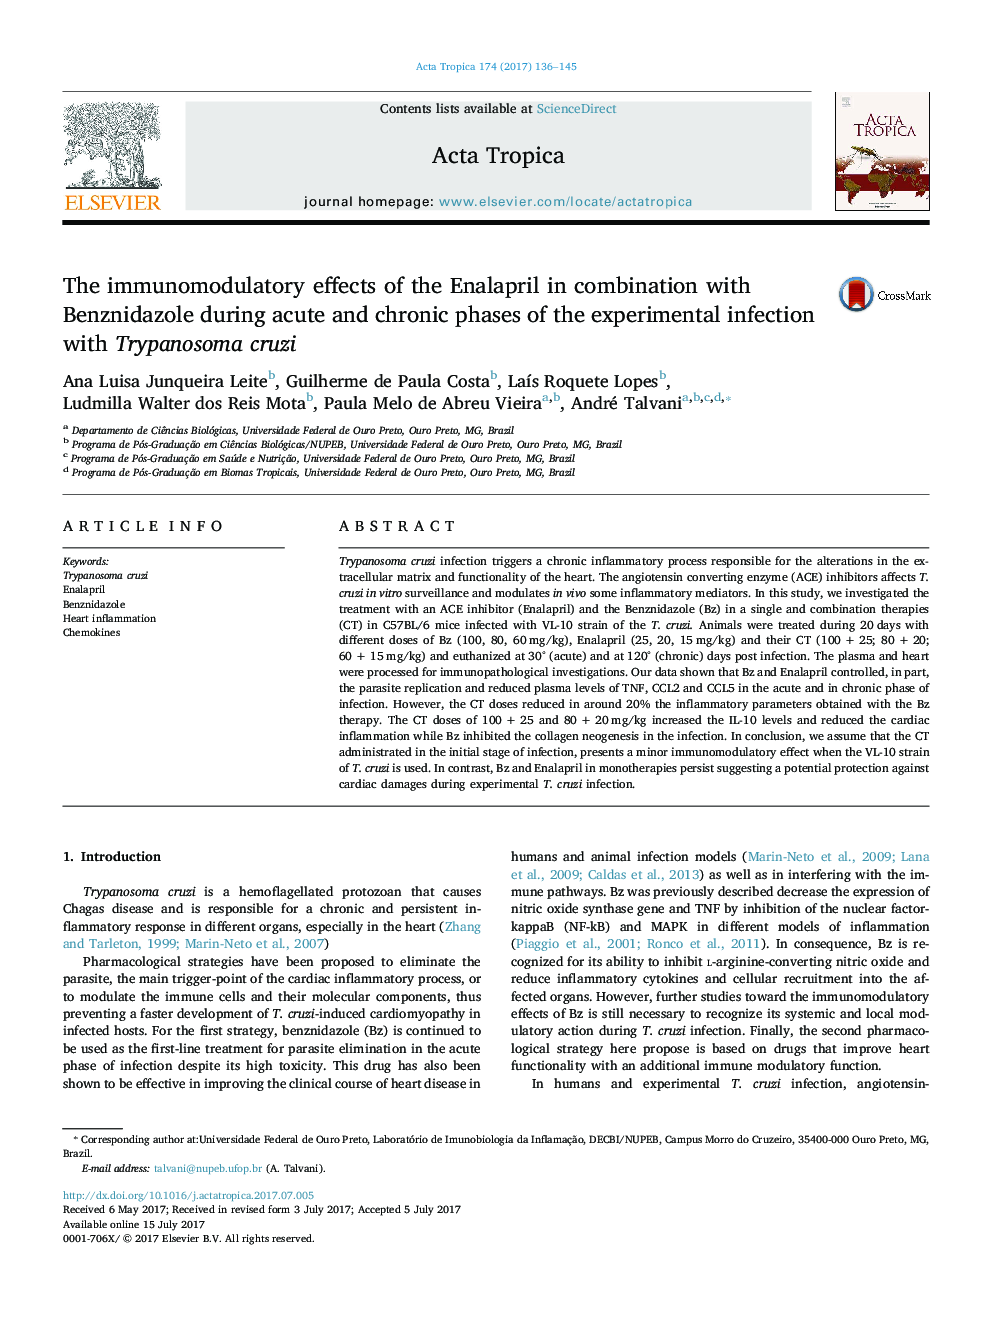 اثرات ایمن سازی انالاپریل در ترکیب با بنزنیدازول در مراحل حاد و مزمن عفونت تجربی با تریپانوسومای کریزی 